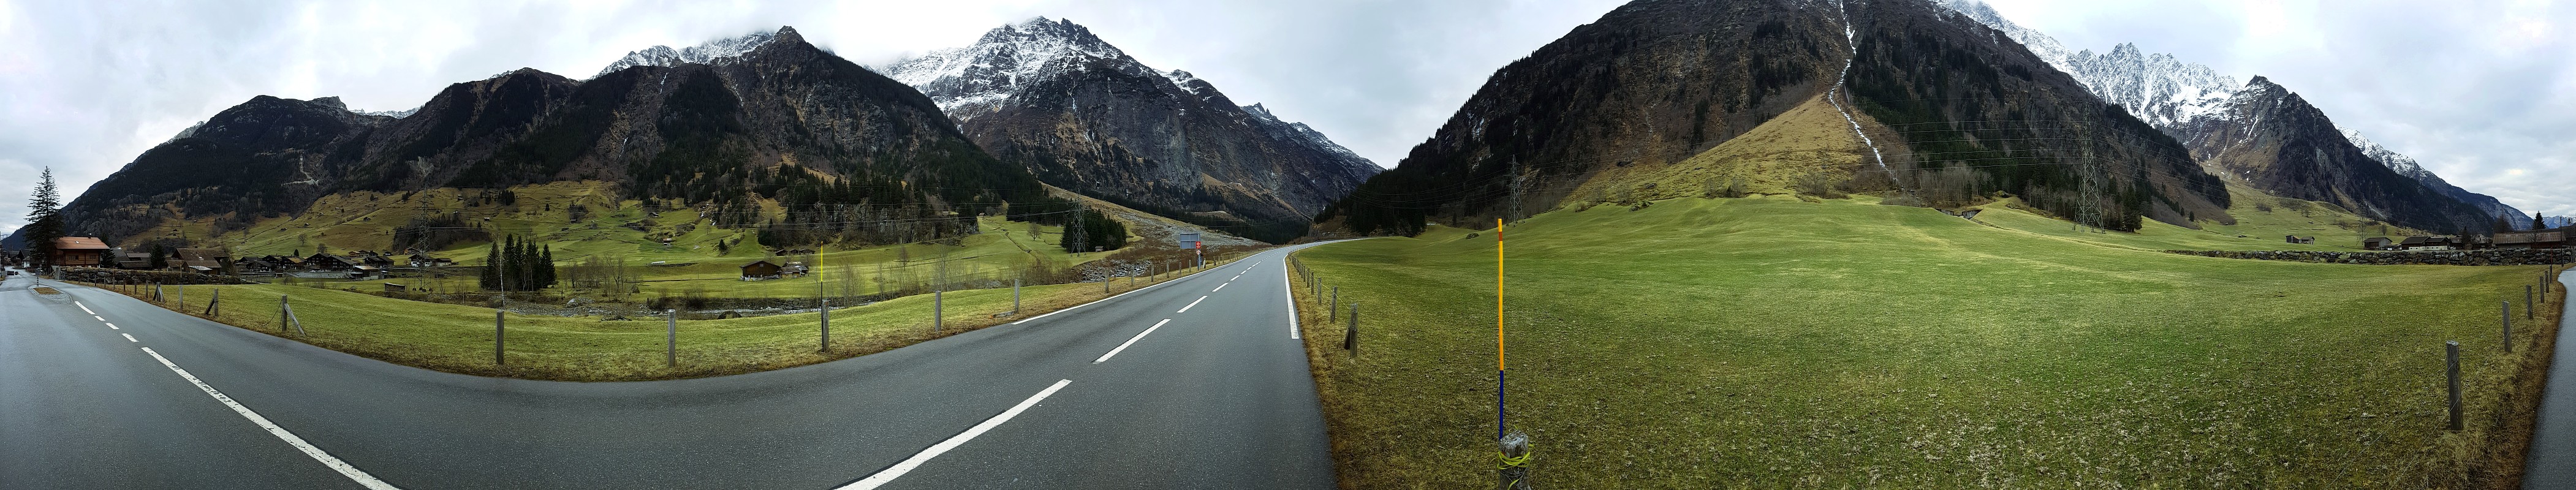 Alpy, zielona grudniowa panorama
Guttannen, Szwajcaria 2016
Słowa kluczowe: panorama,zielony,góry